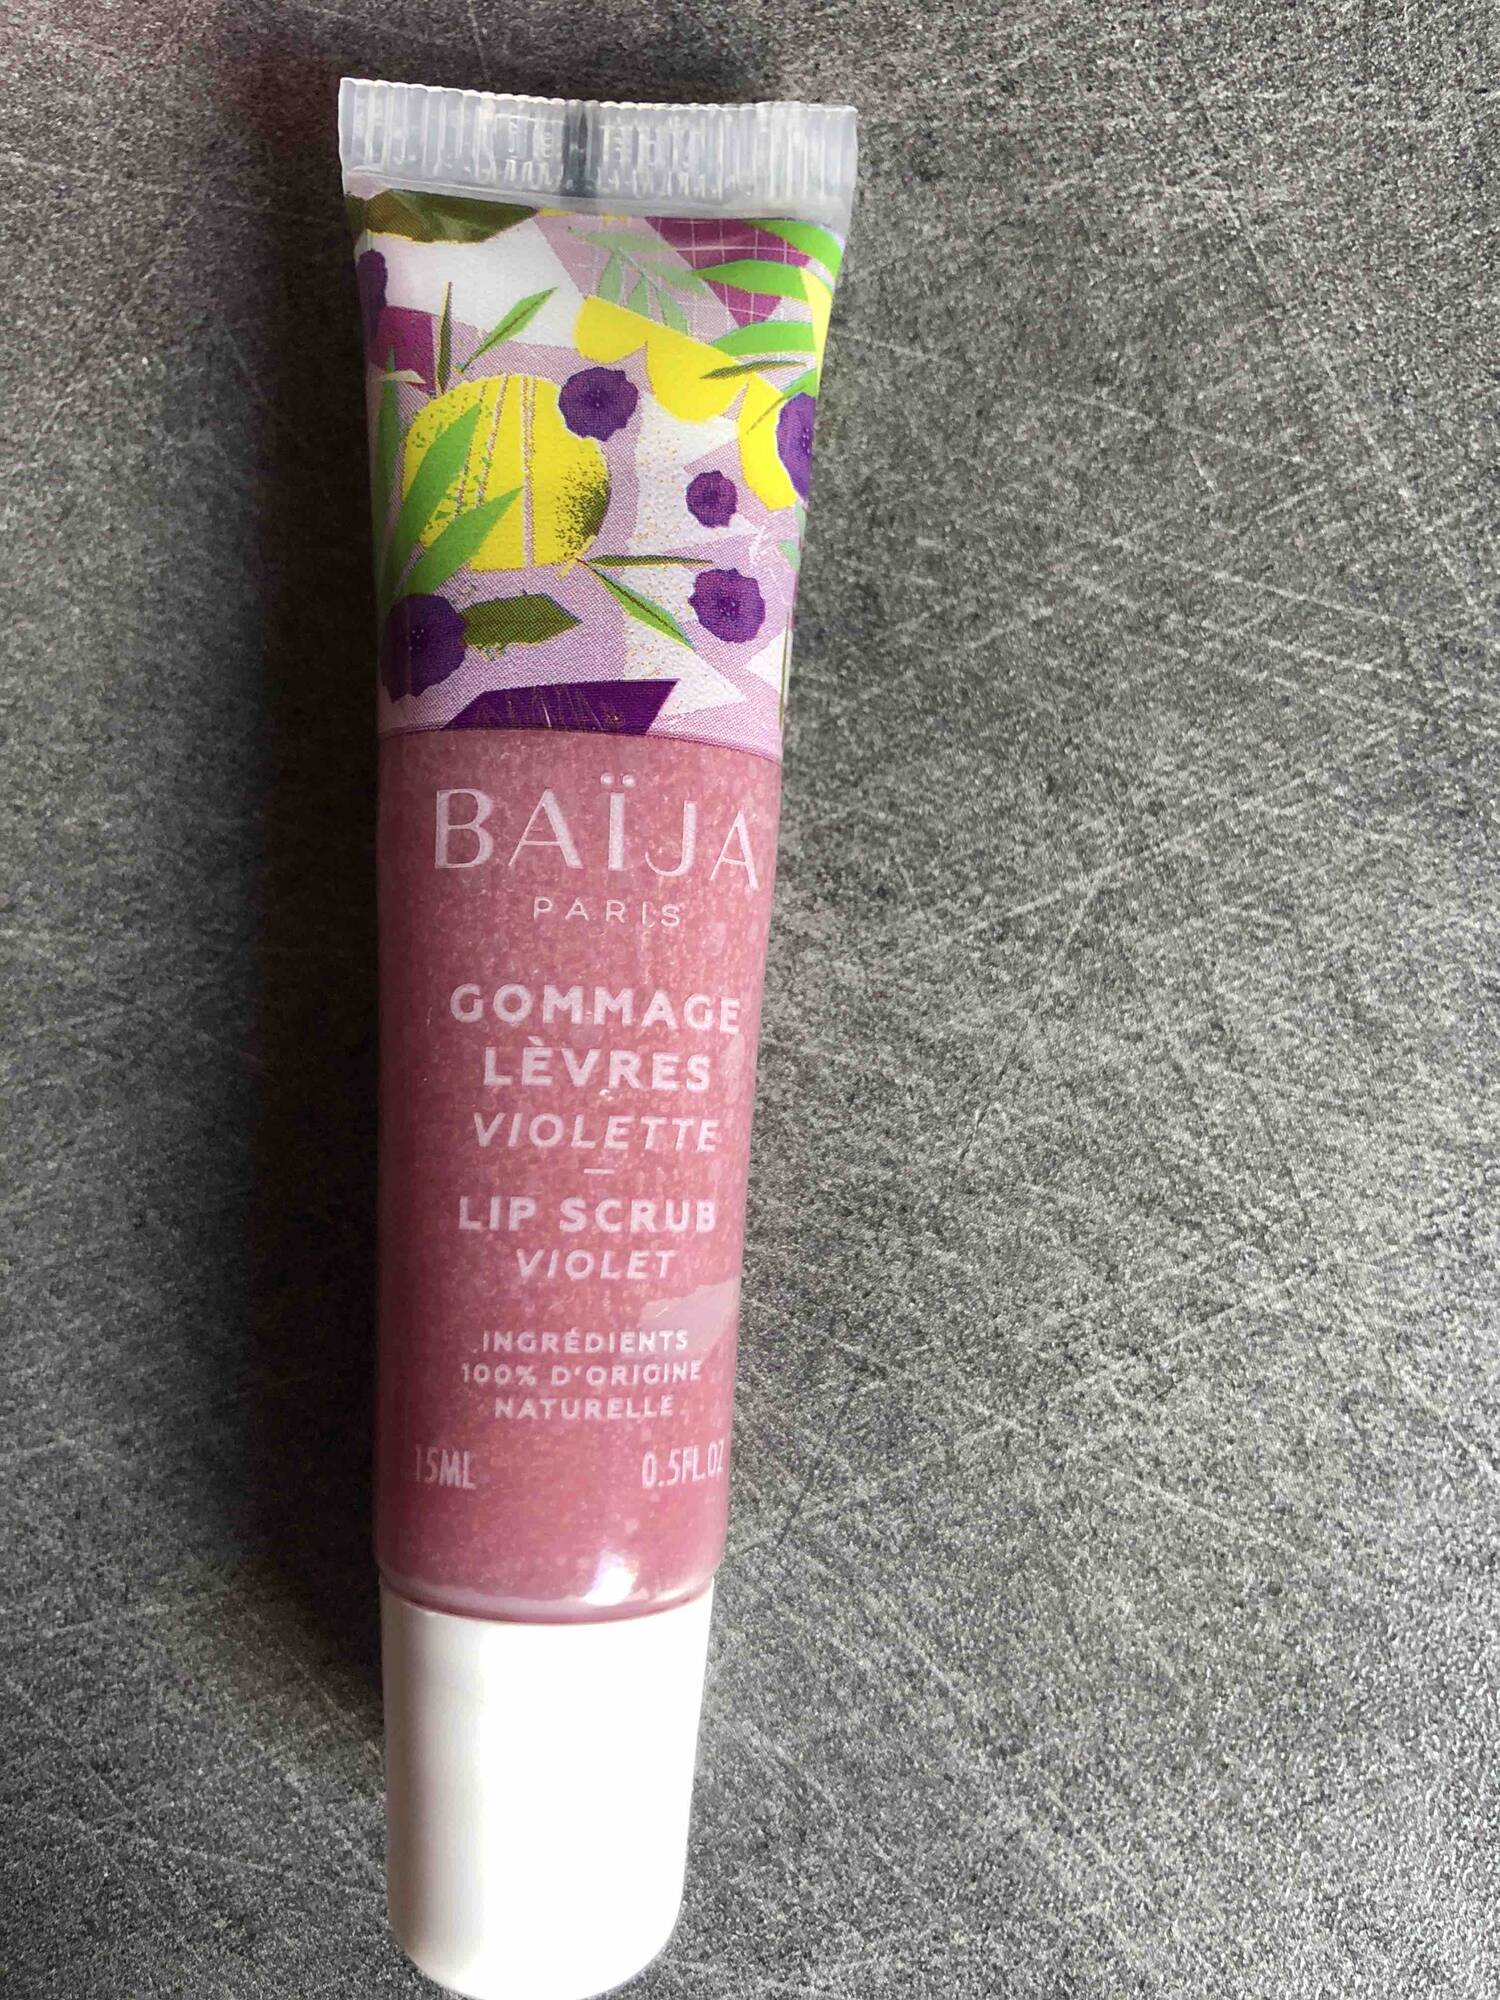 BAIJA - Gommage lèvres violette